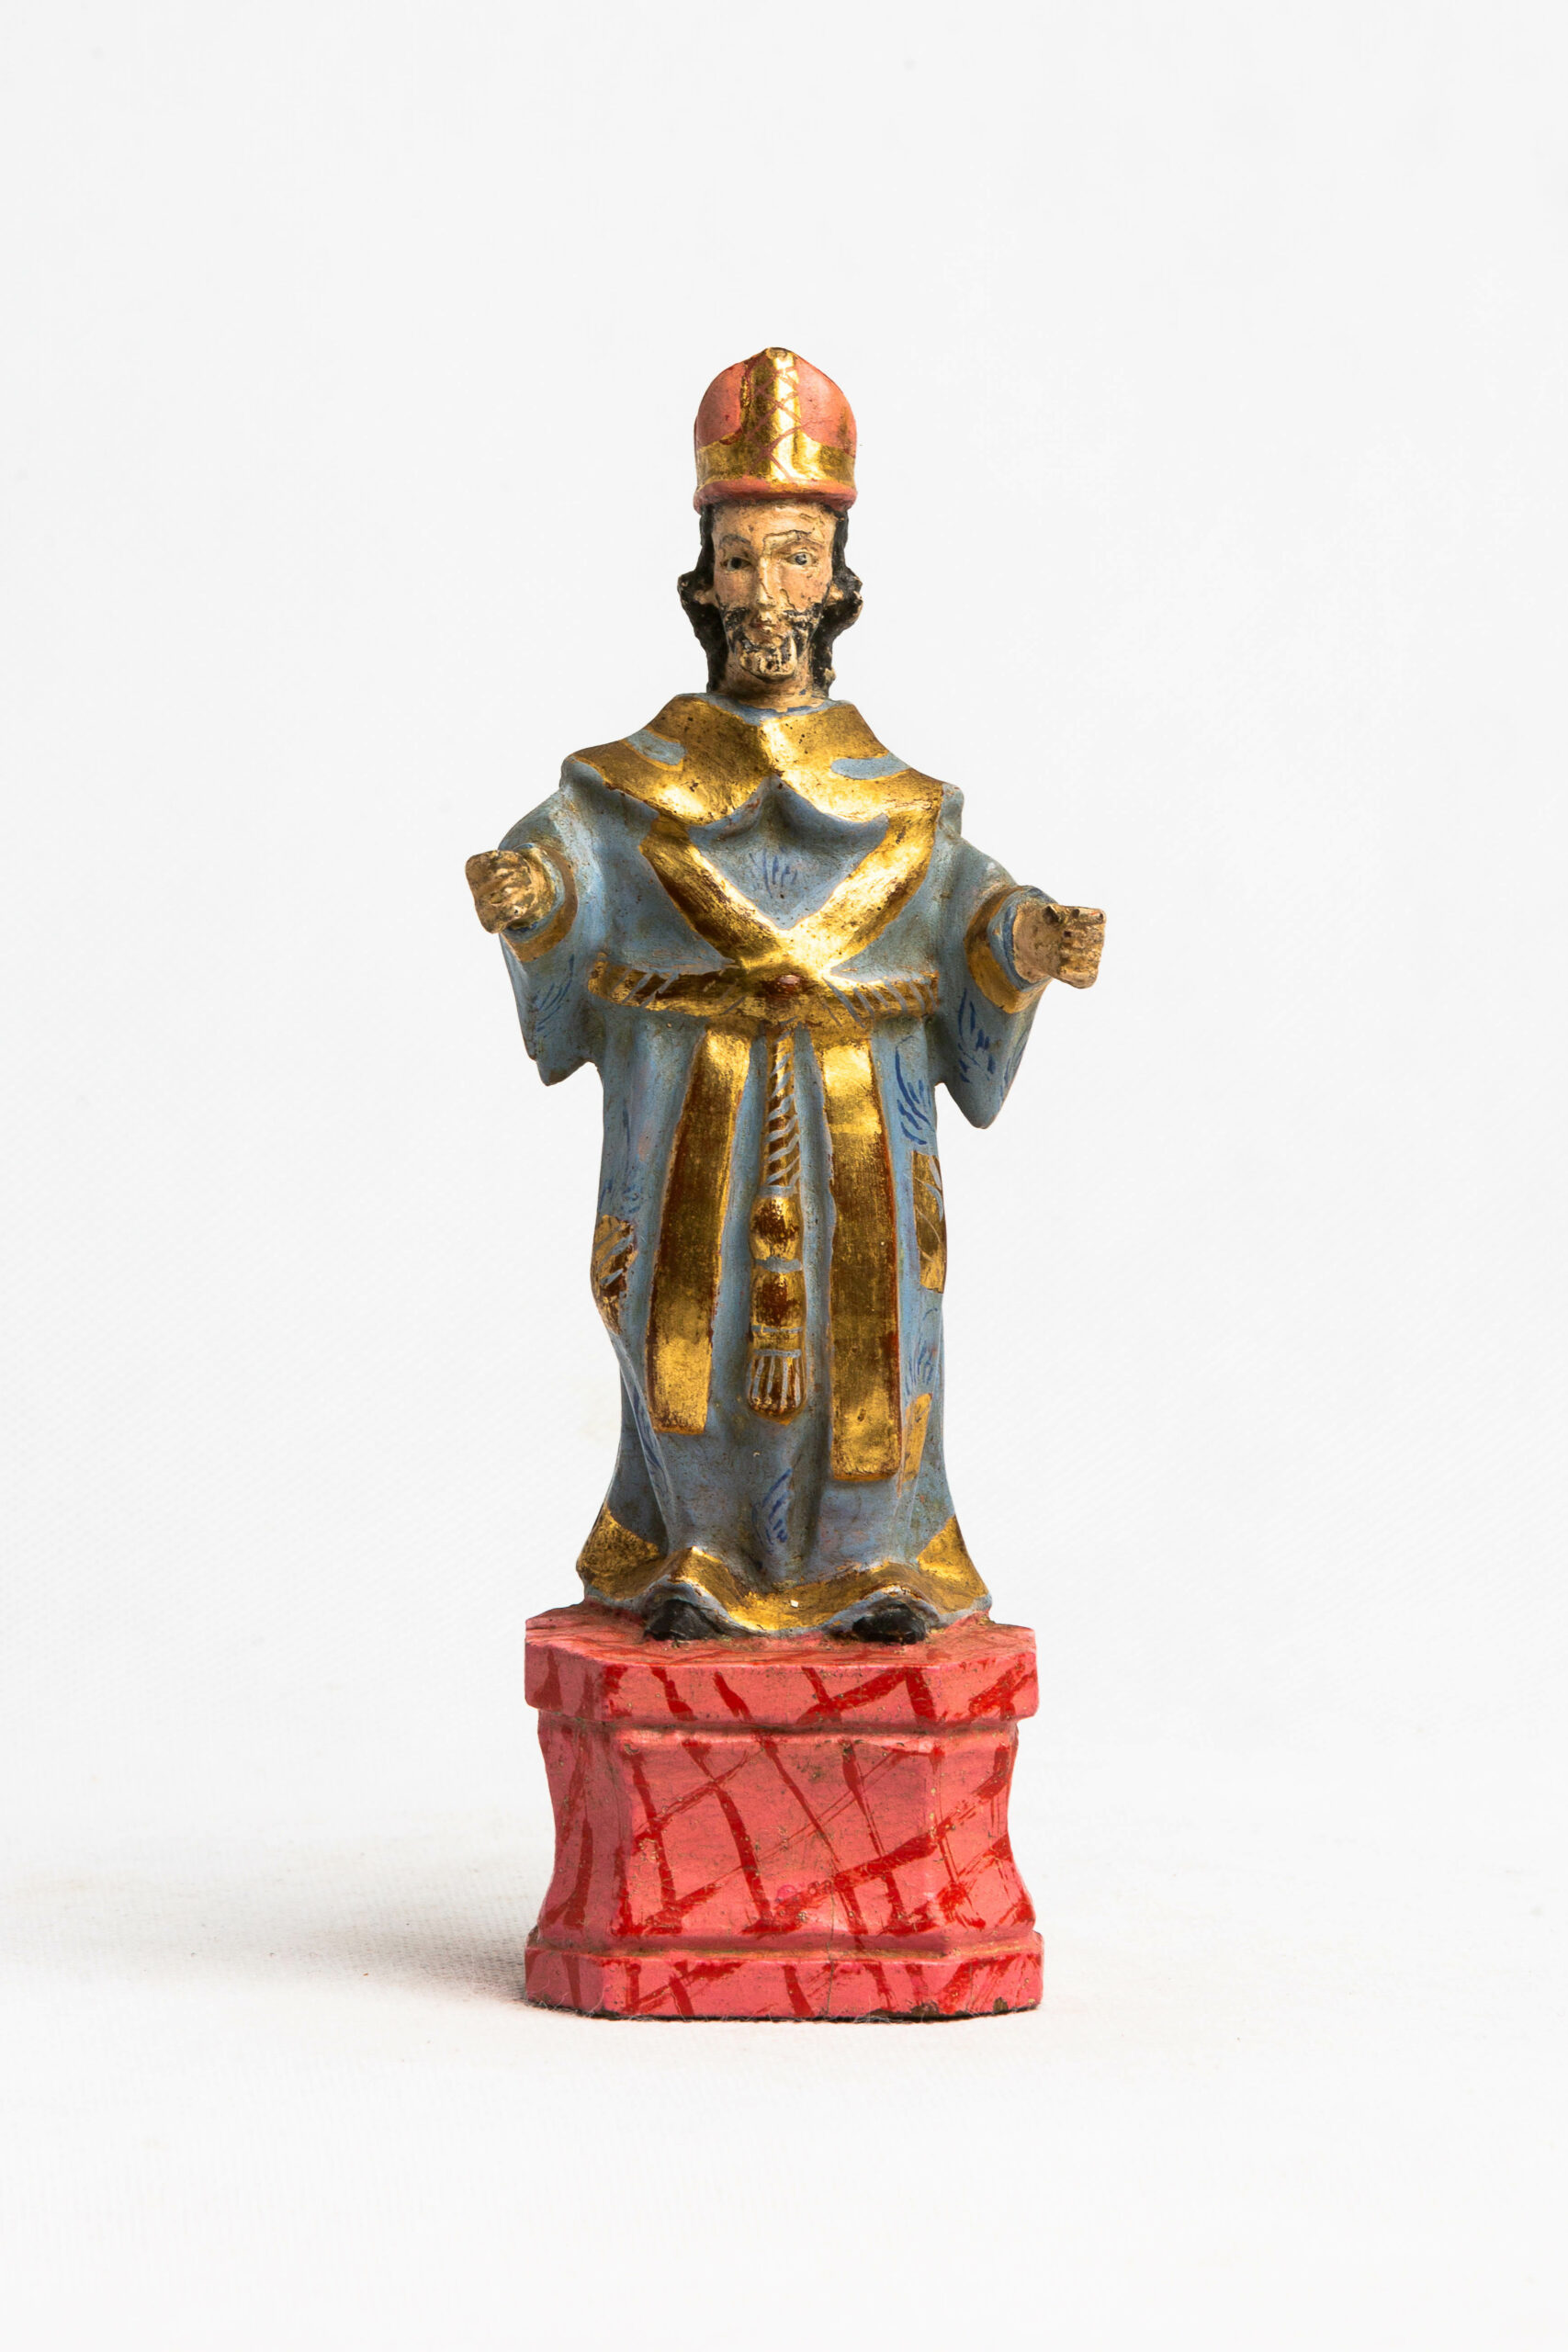 São Brás, Escultura religiosa, séc. XIX - Museu Boulieu